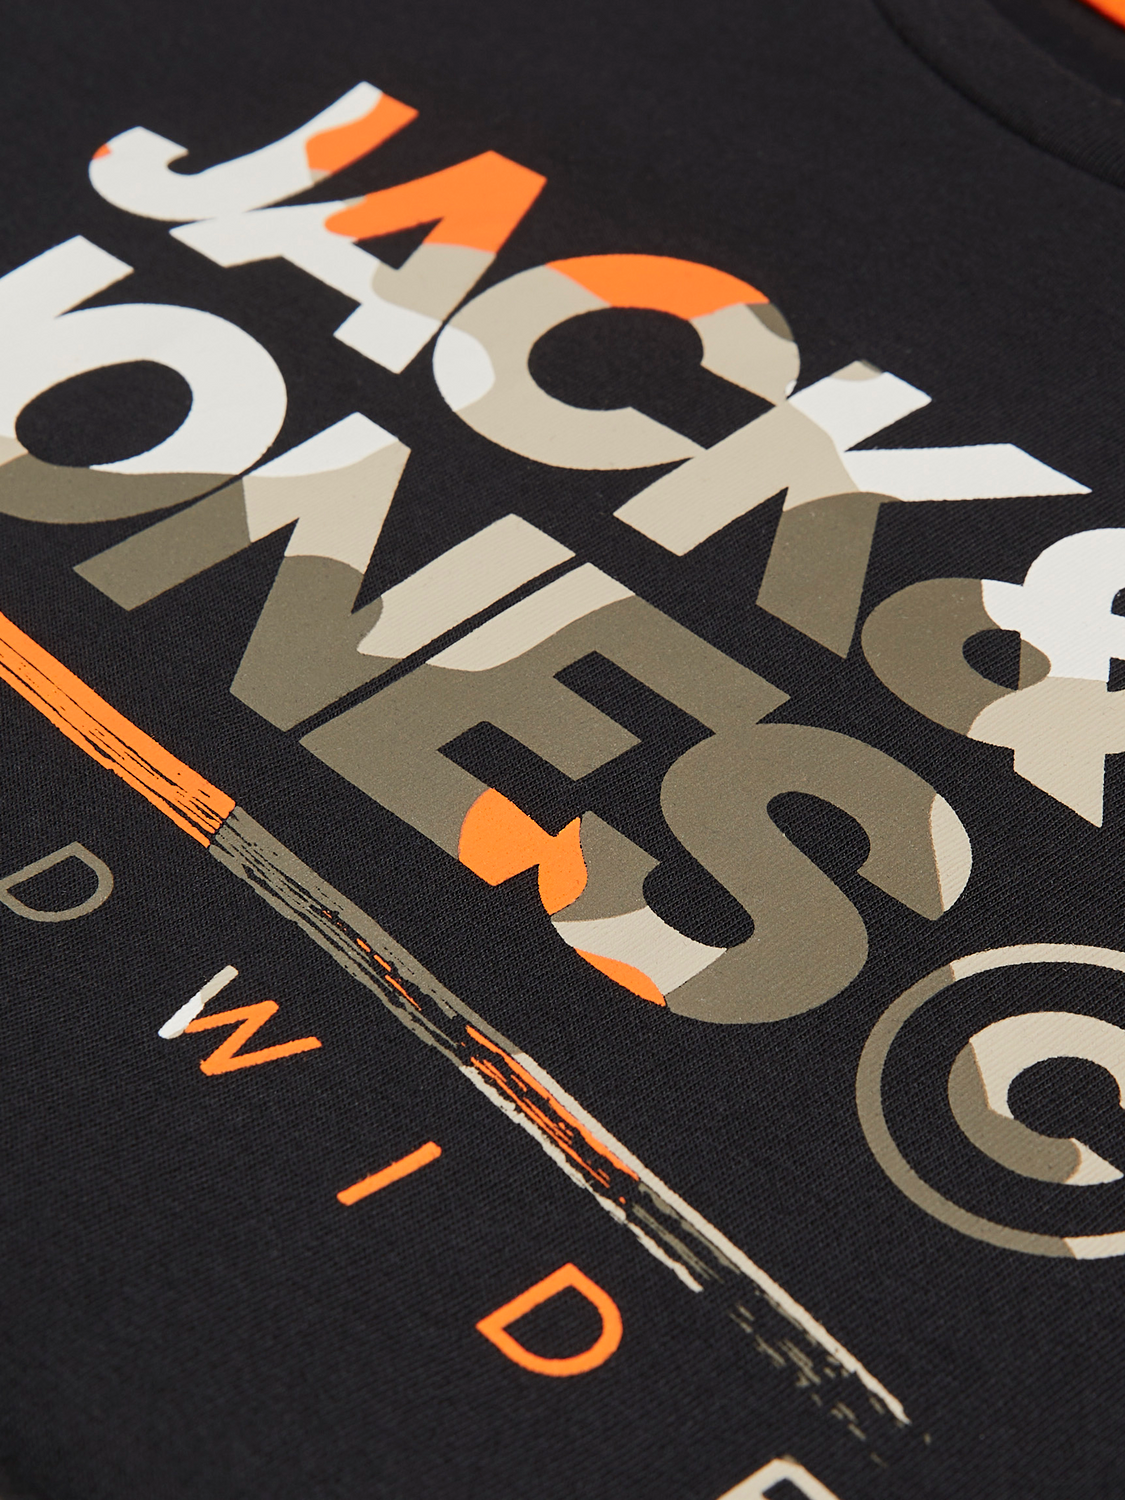 Jack & Jones Z logo T-shirt Mini -Black - 12259499